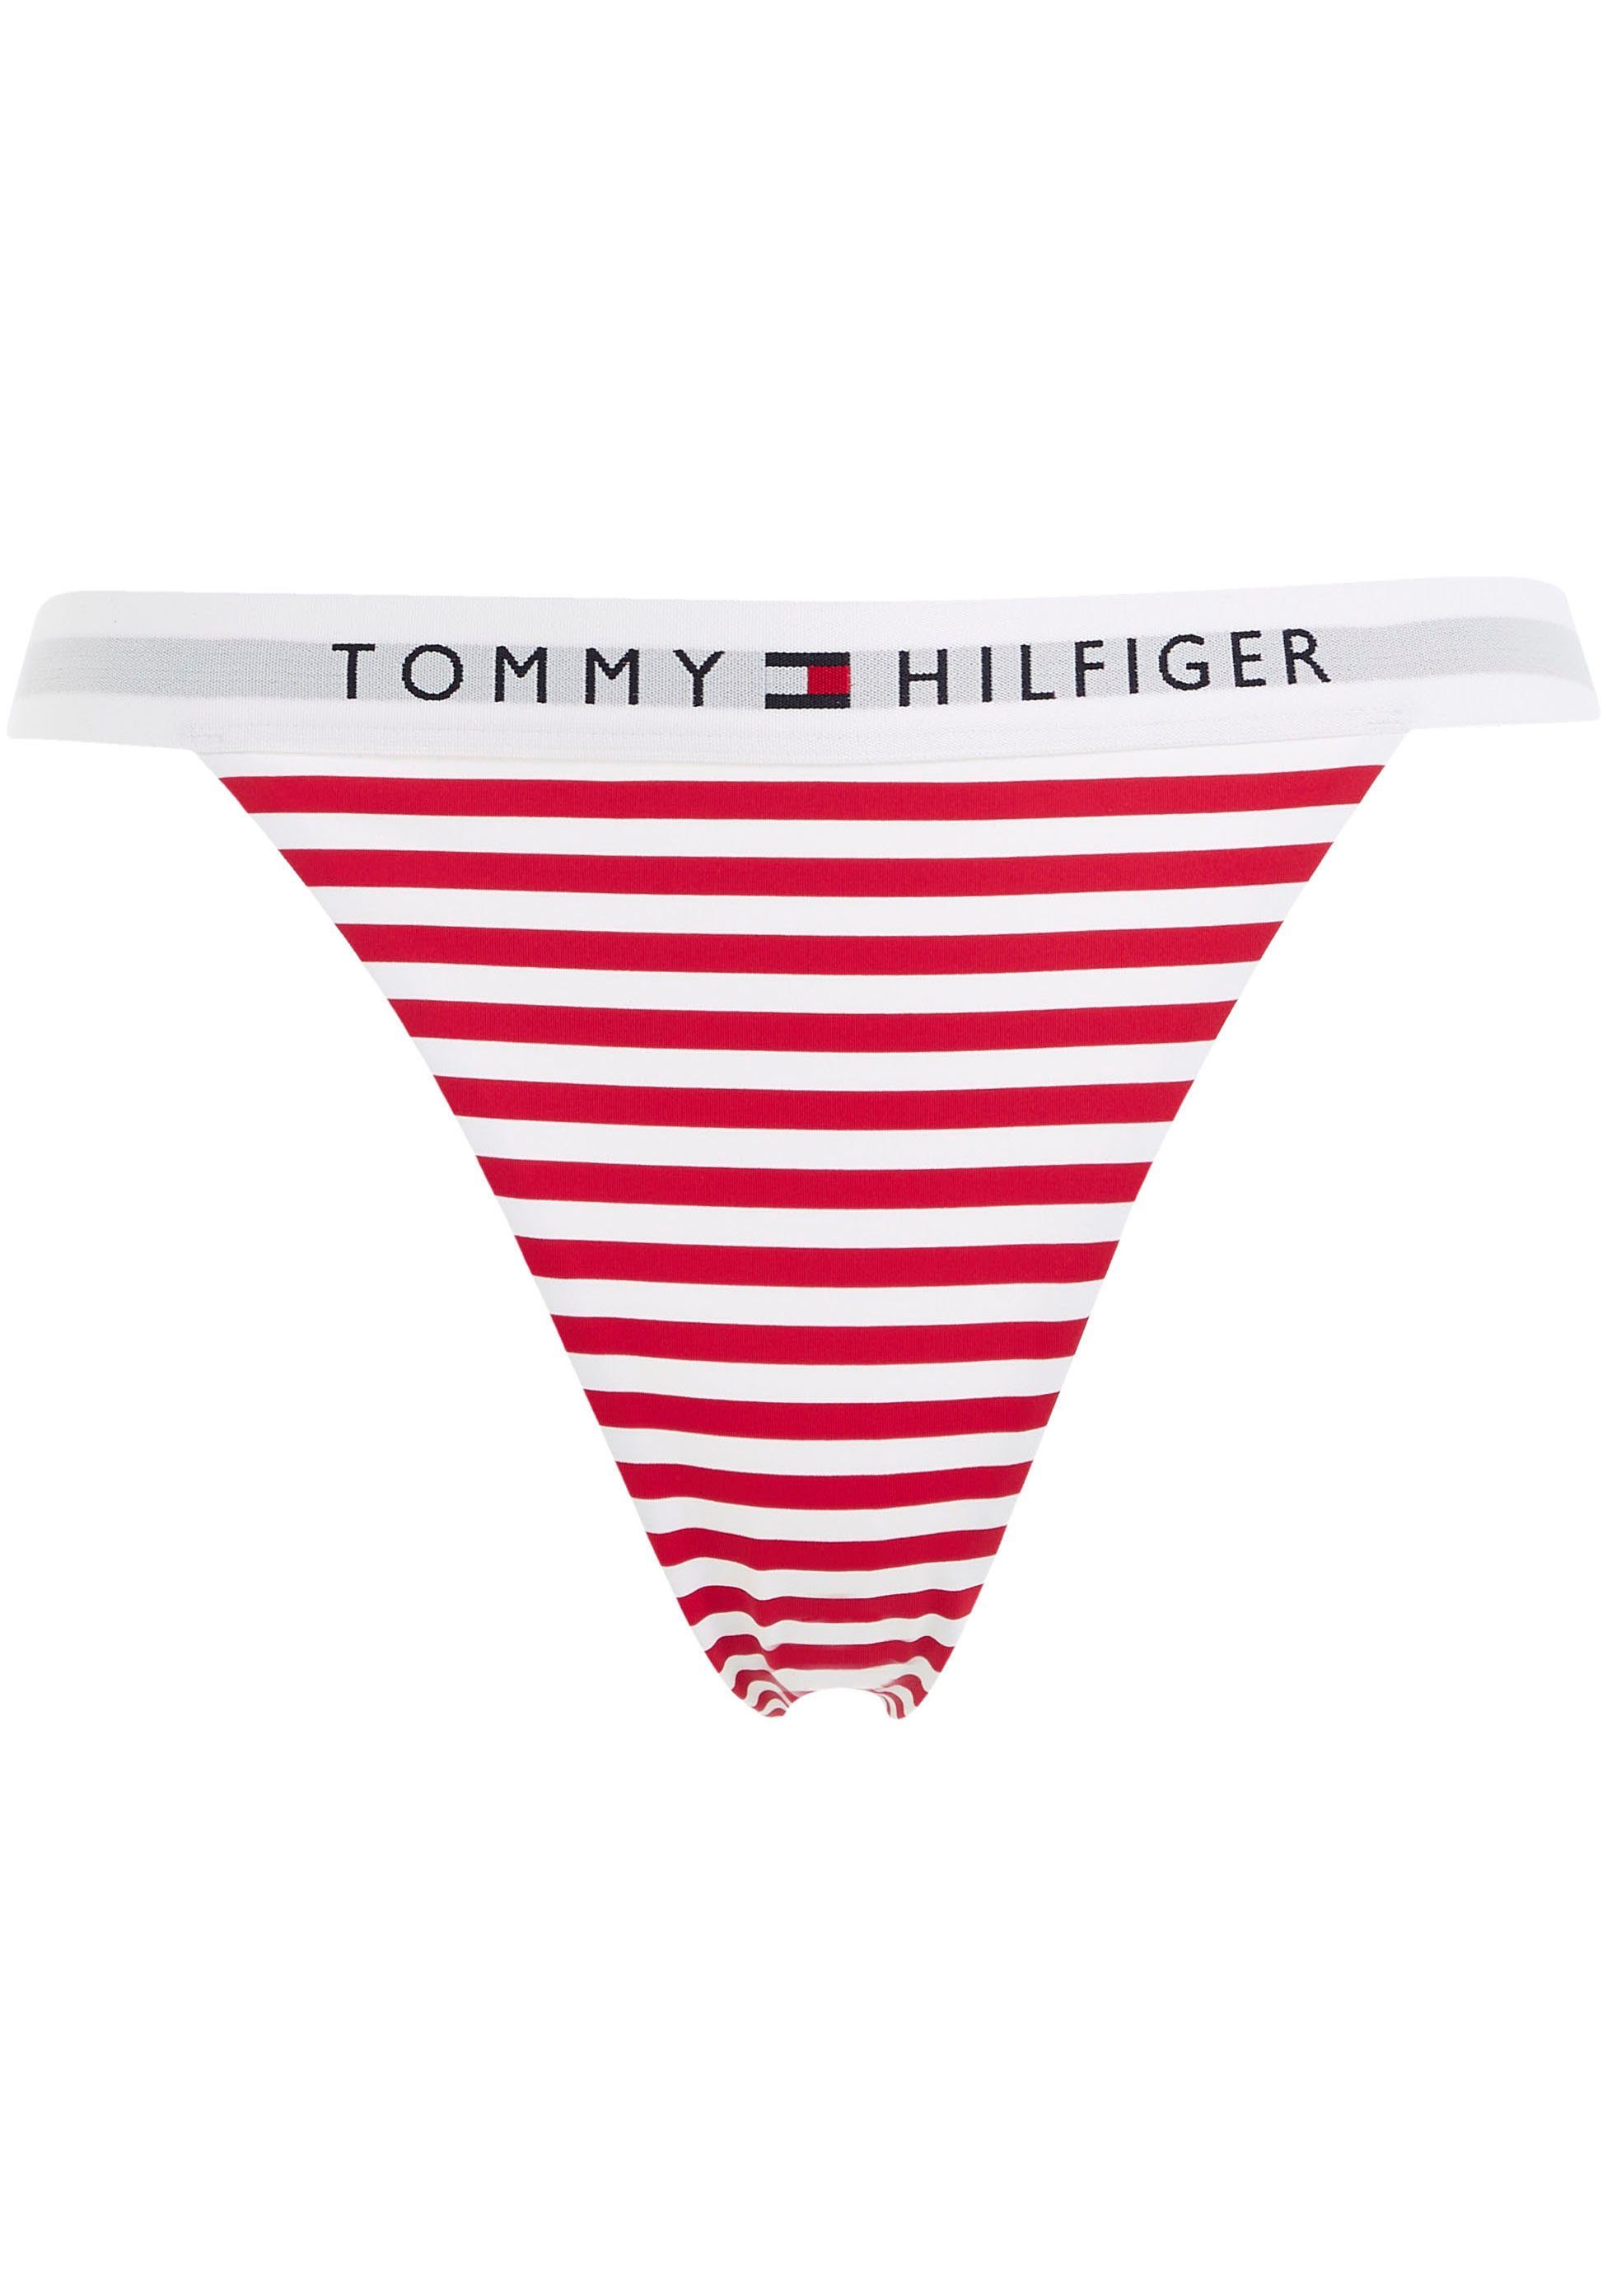 CHEEKY Hilfiger Tommy Tommy Swimwear Hilfiger-Branding PRINT TH BIKINI WB mit Bikini-Hose